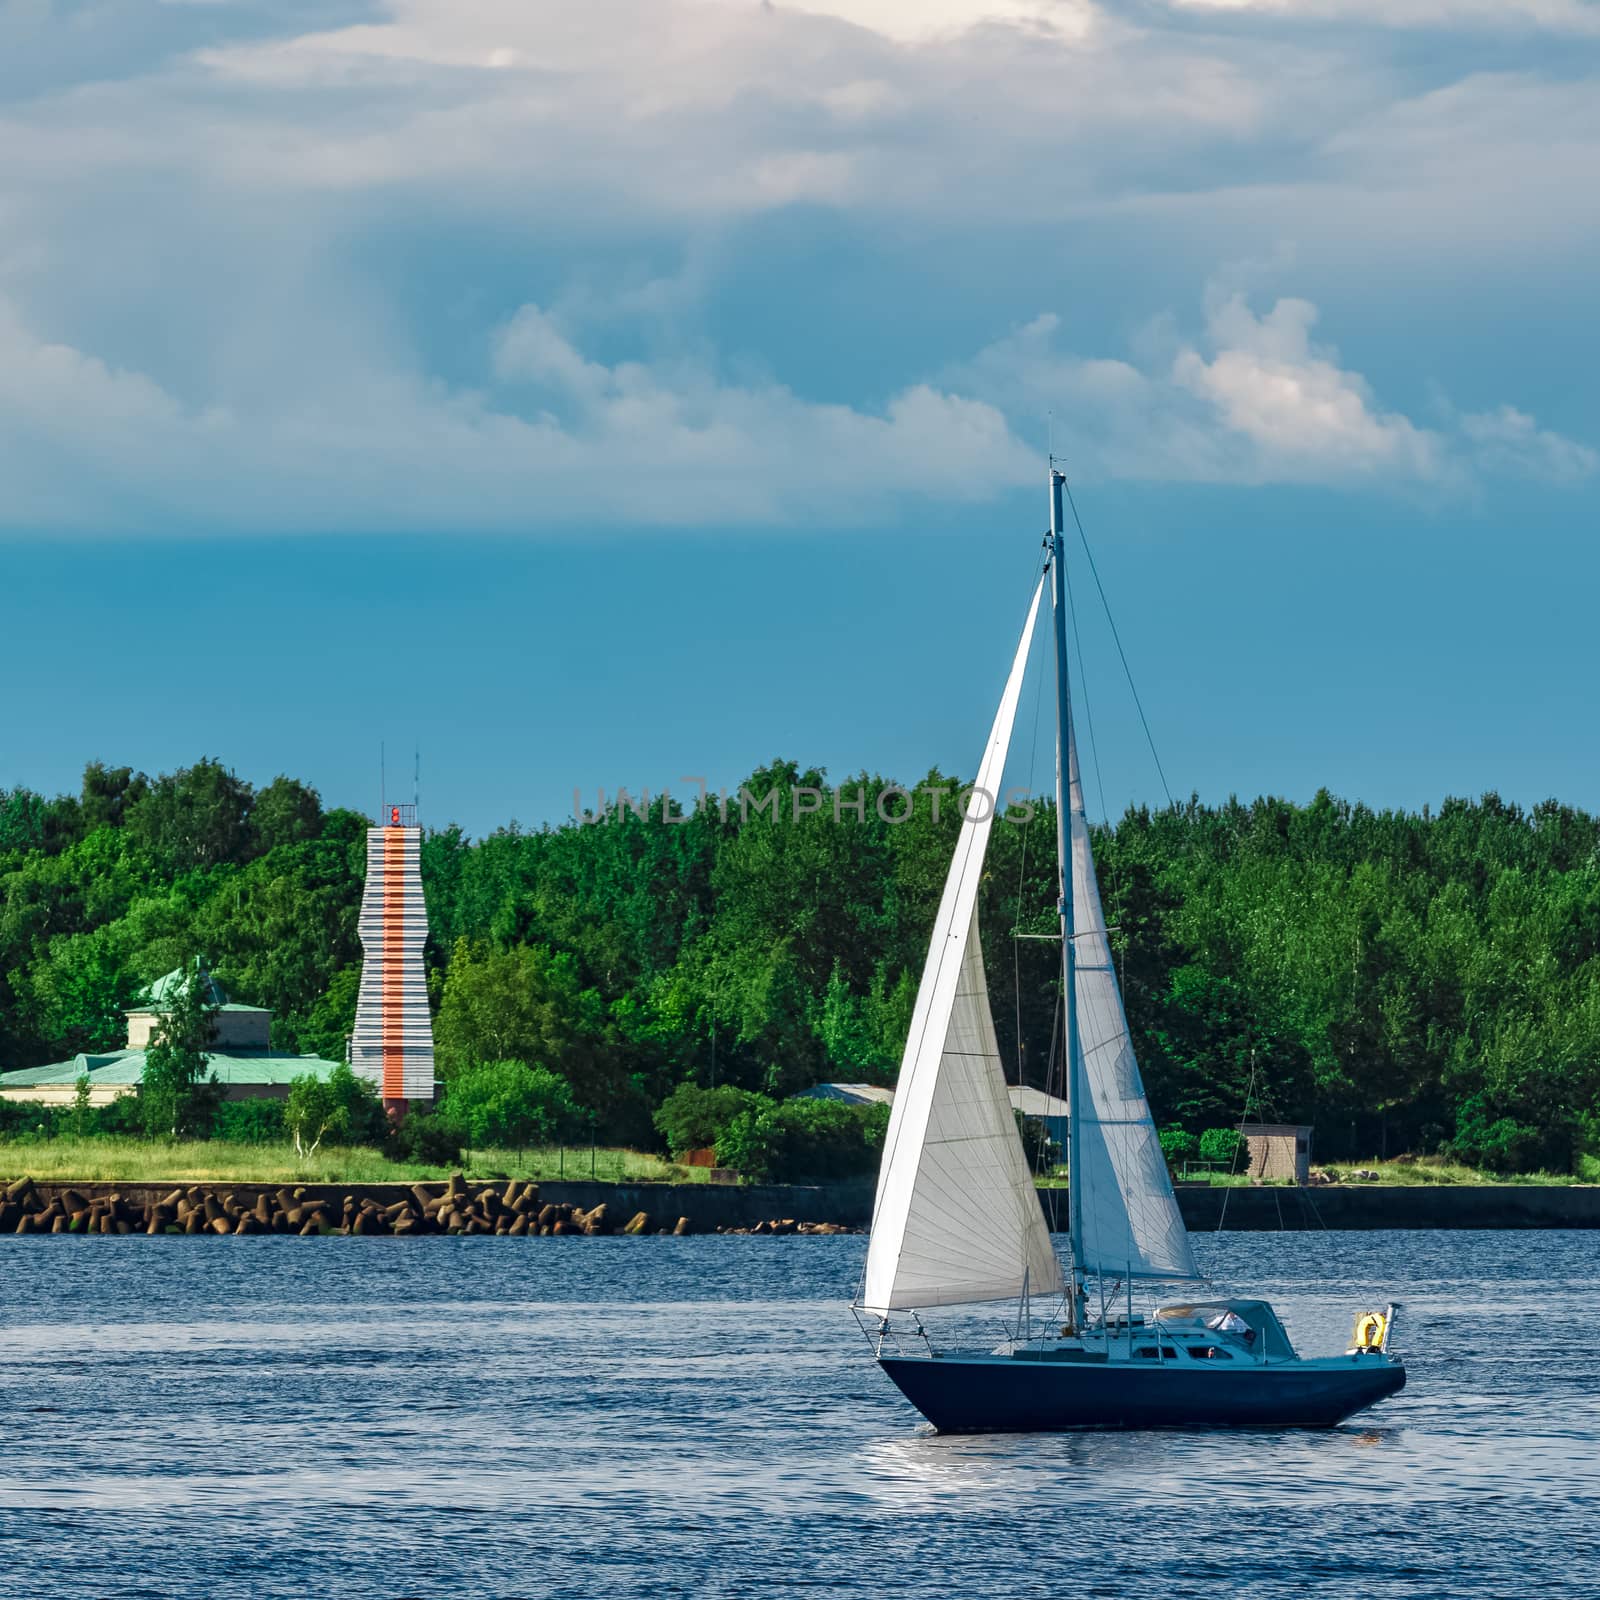 Blue sailboat at river by sengnsp